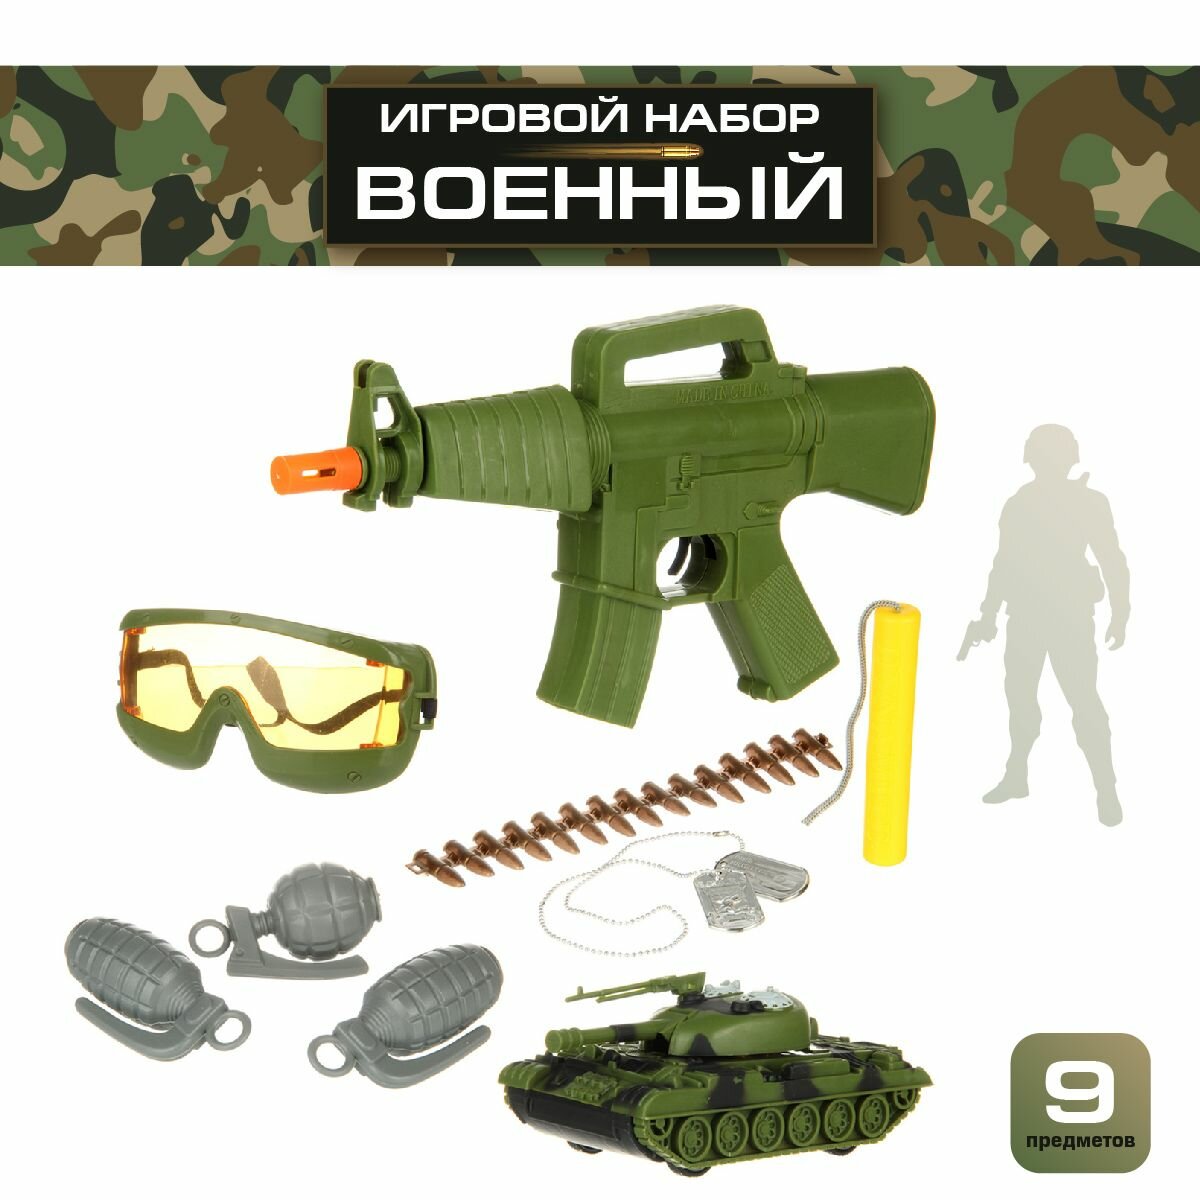 Детский игровой набор военного 10 предметов, Veld Co / Игрушечные оружия для детей / Игрушка фрикционный танк, автомат, граната для мальчика